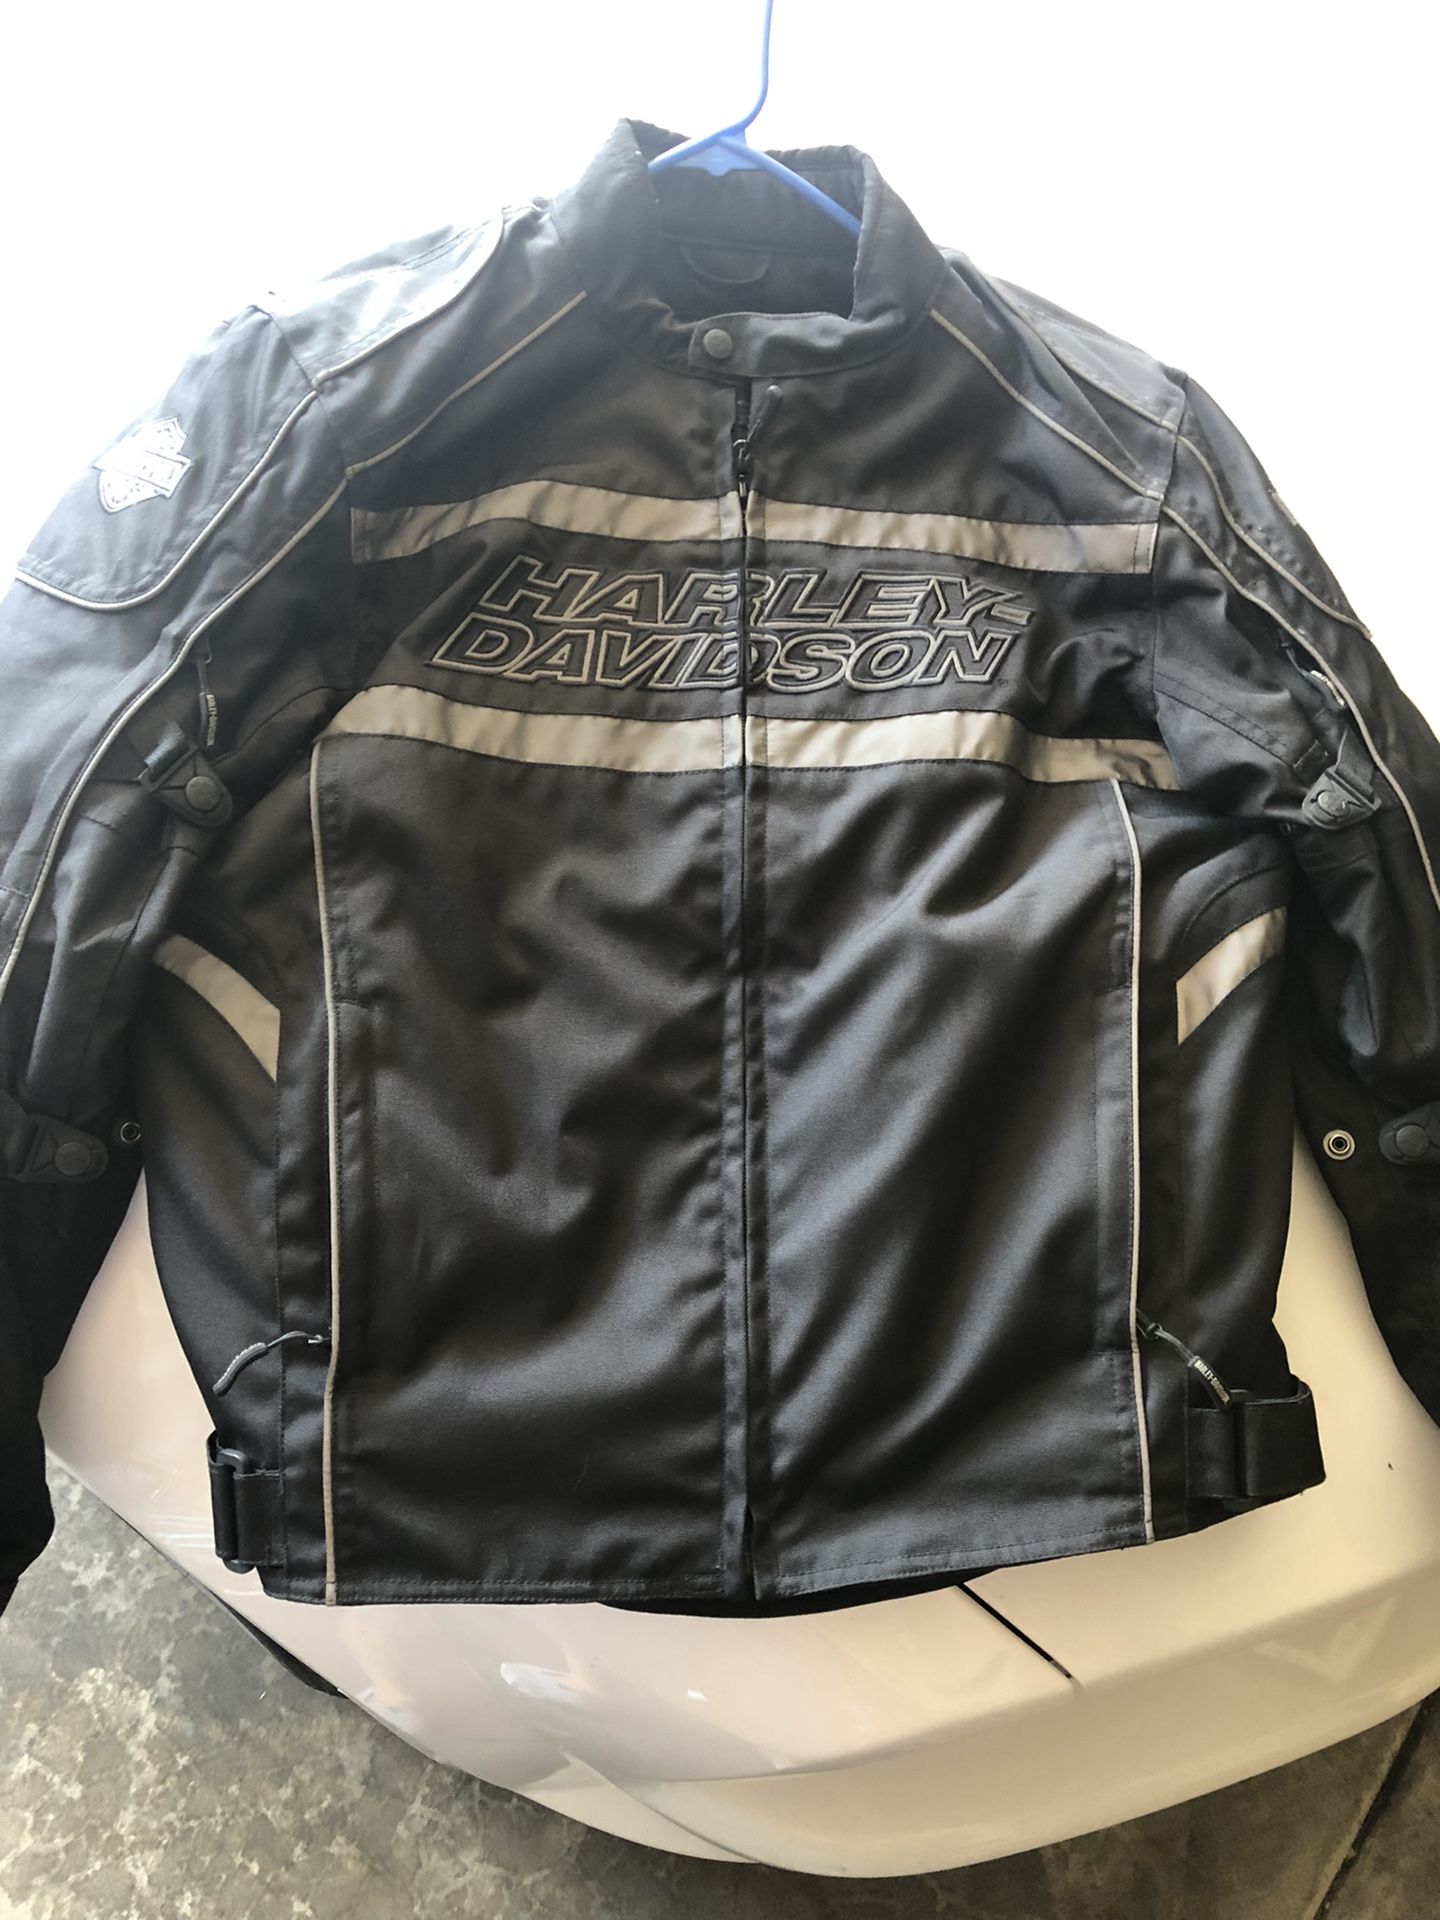 Harley Davidson Men’s Waterproof Riding Jacket